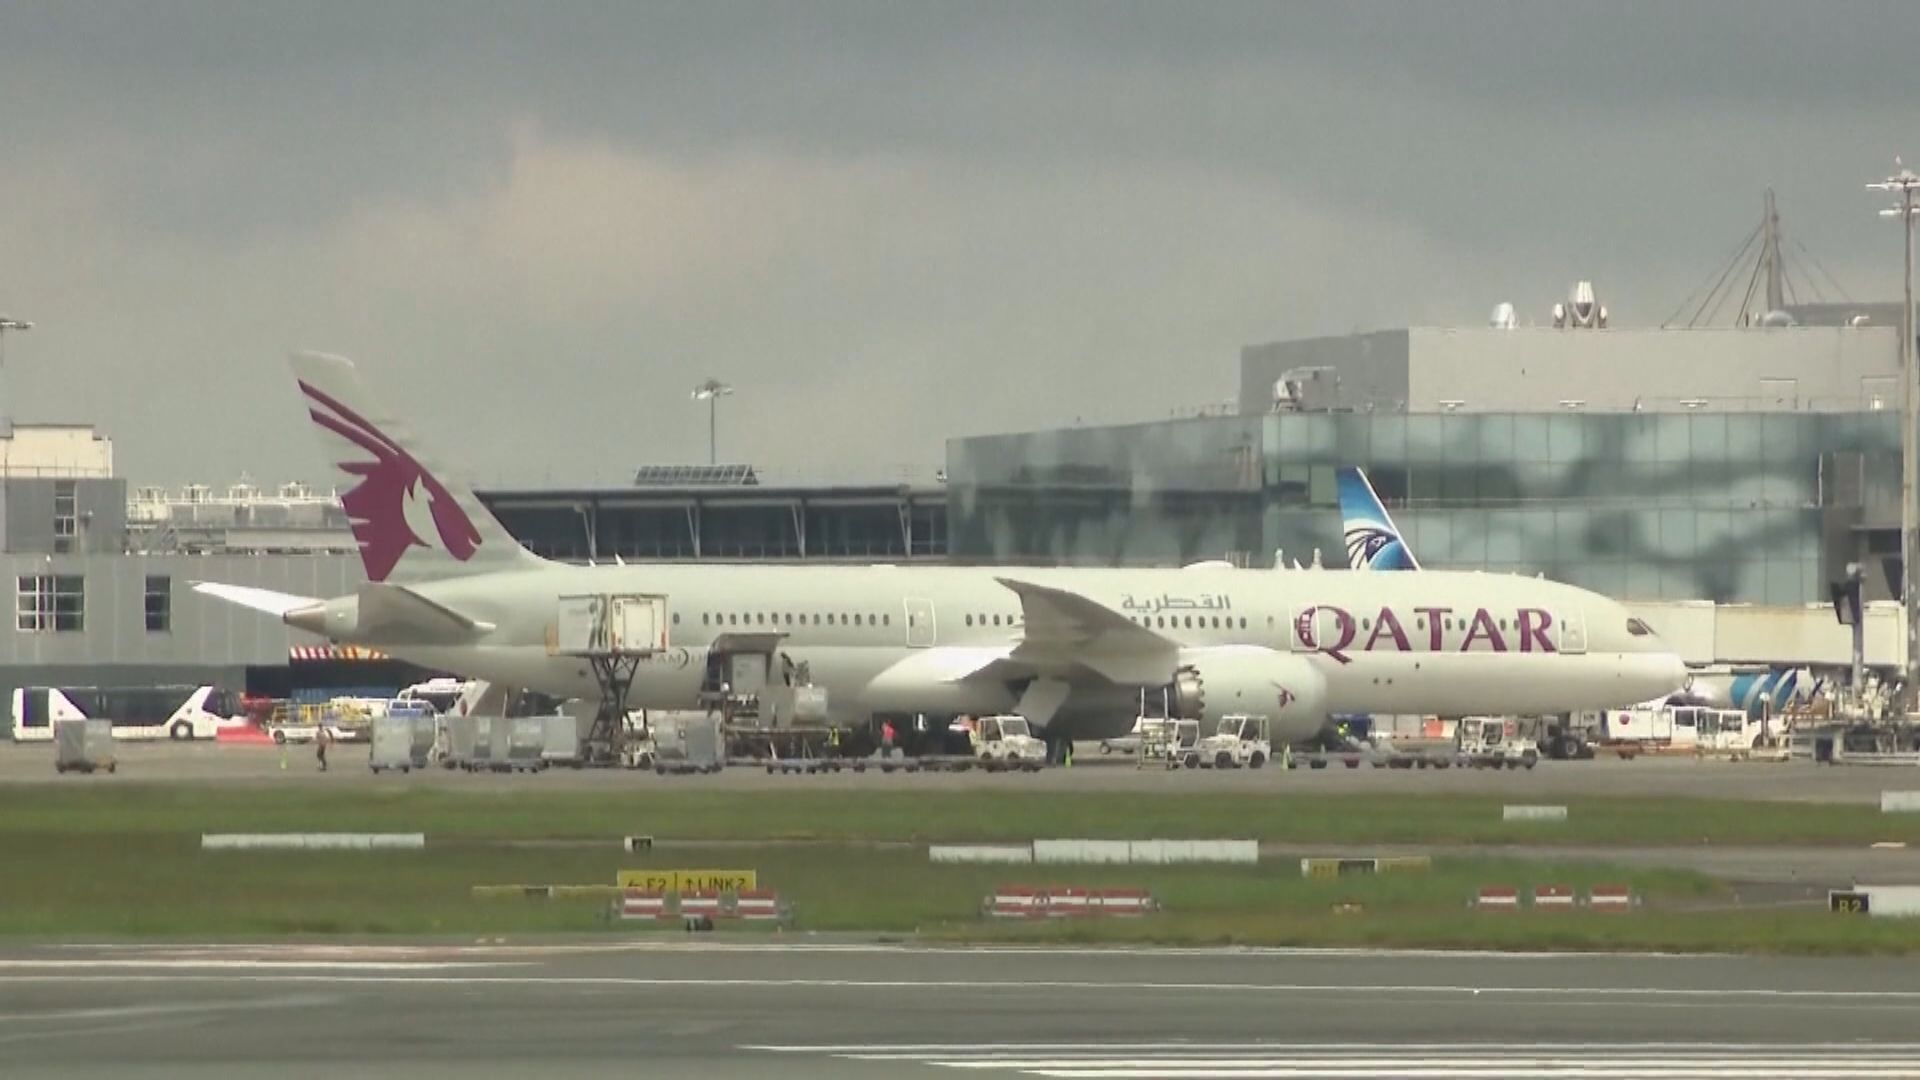 卡塔爾航空客機於土耳其上空遇氣流 12人傷